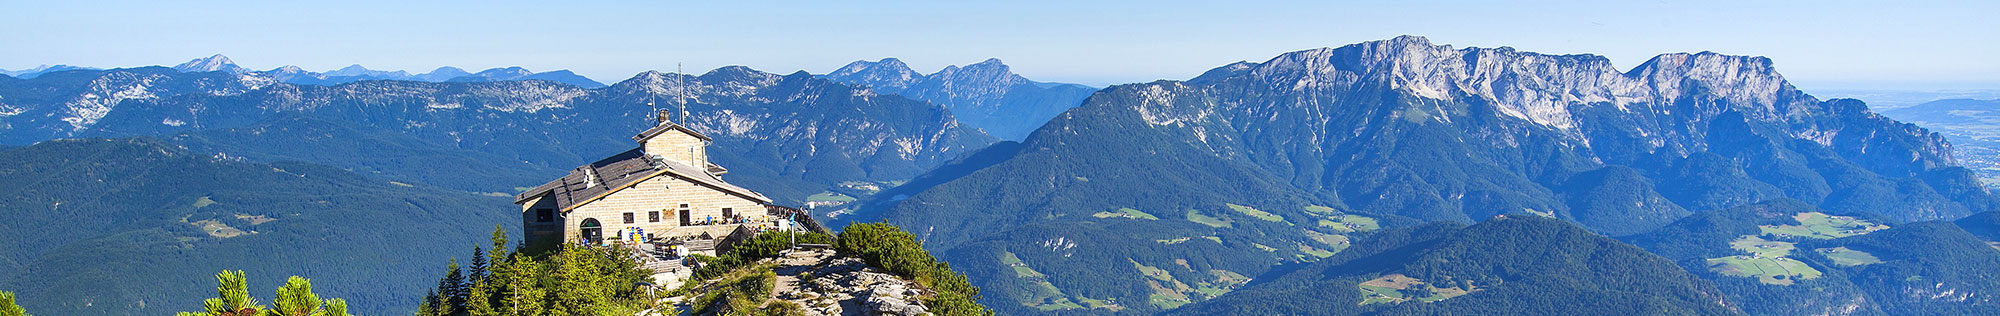 Kehlsteinhaus oberhalb von Berchtesgaden im Berchtesgadener Land